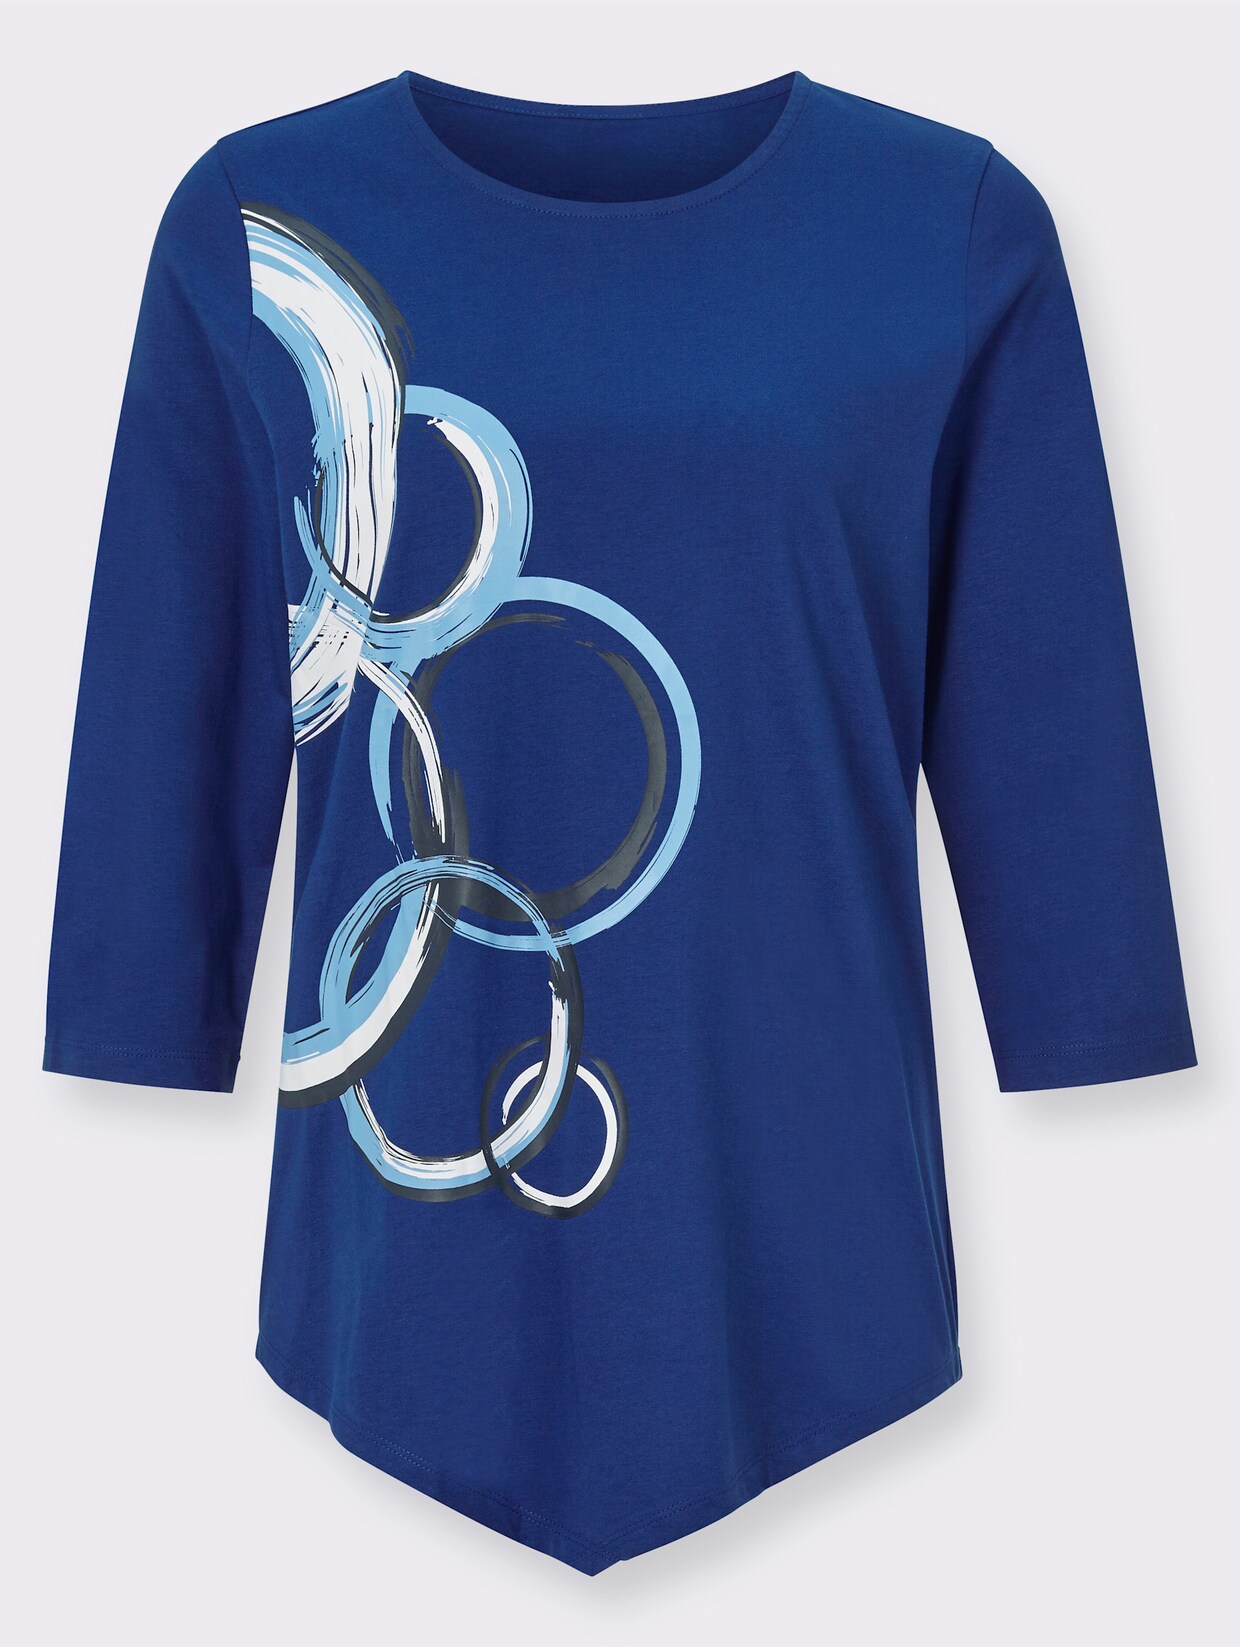 Cípaté tričko - královská modrá-potisk